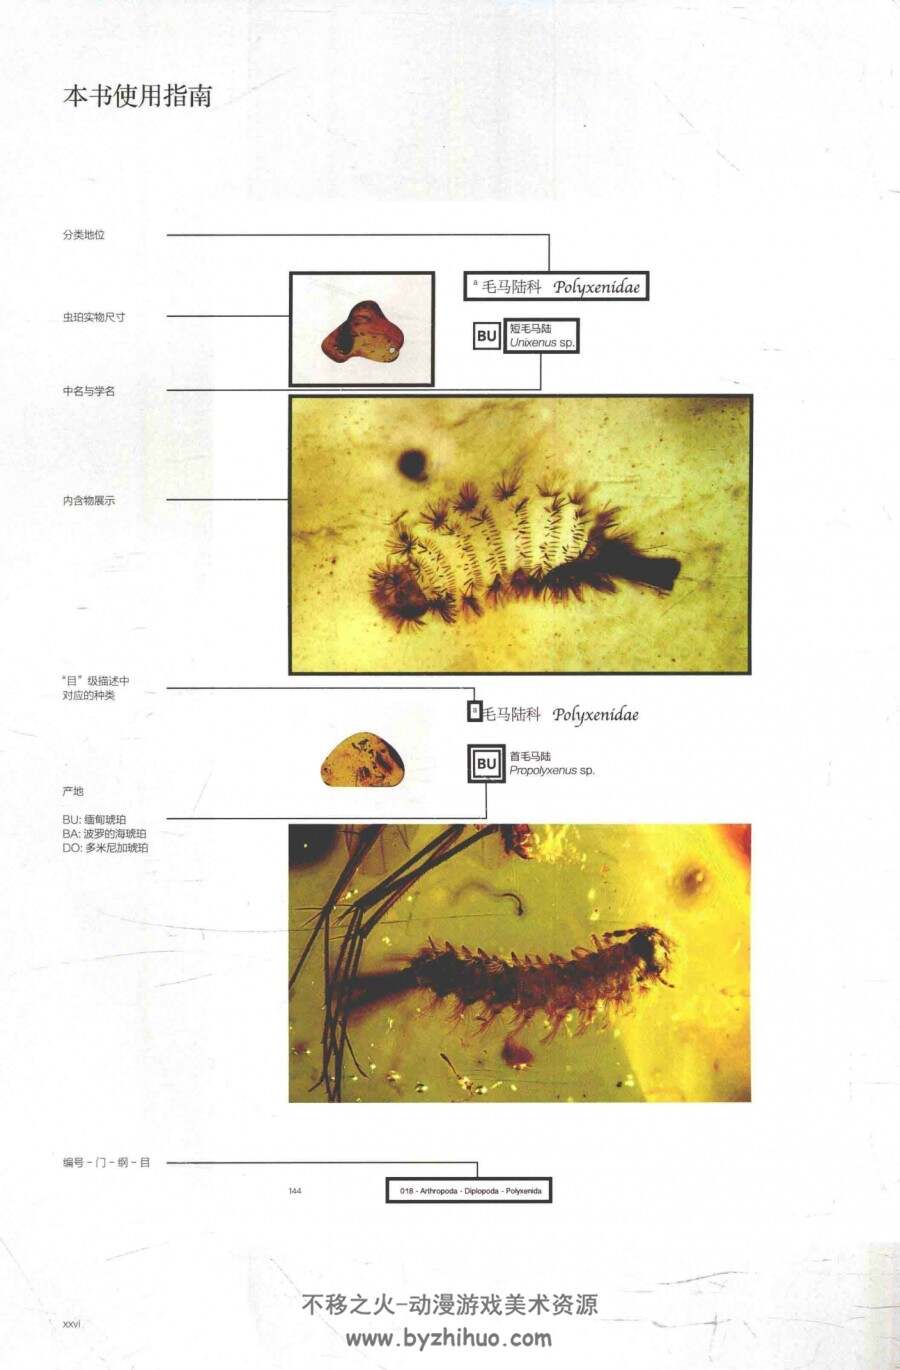 凝固的时空-琥珀中的昆虫及其他无脊椎动物 百度网盘下载赏析